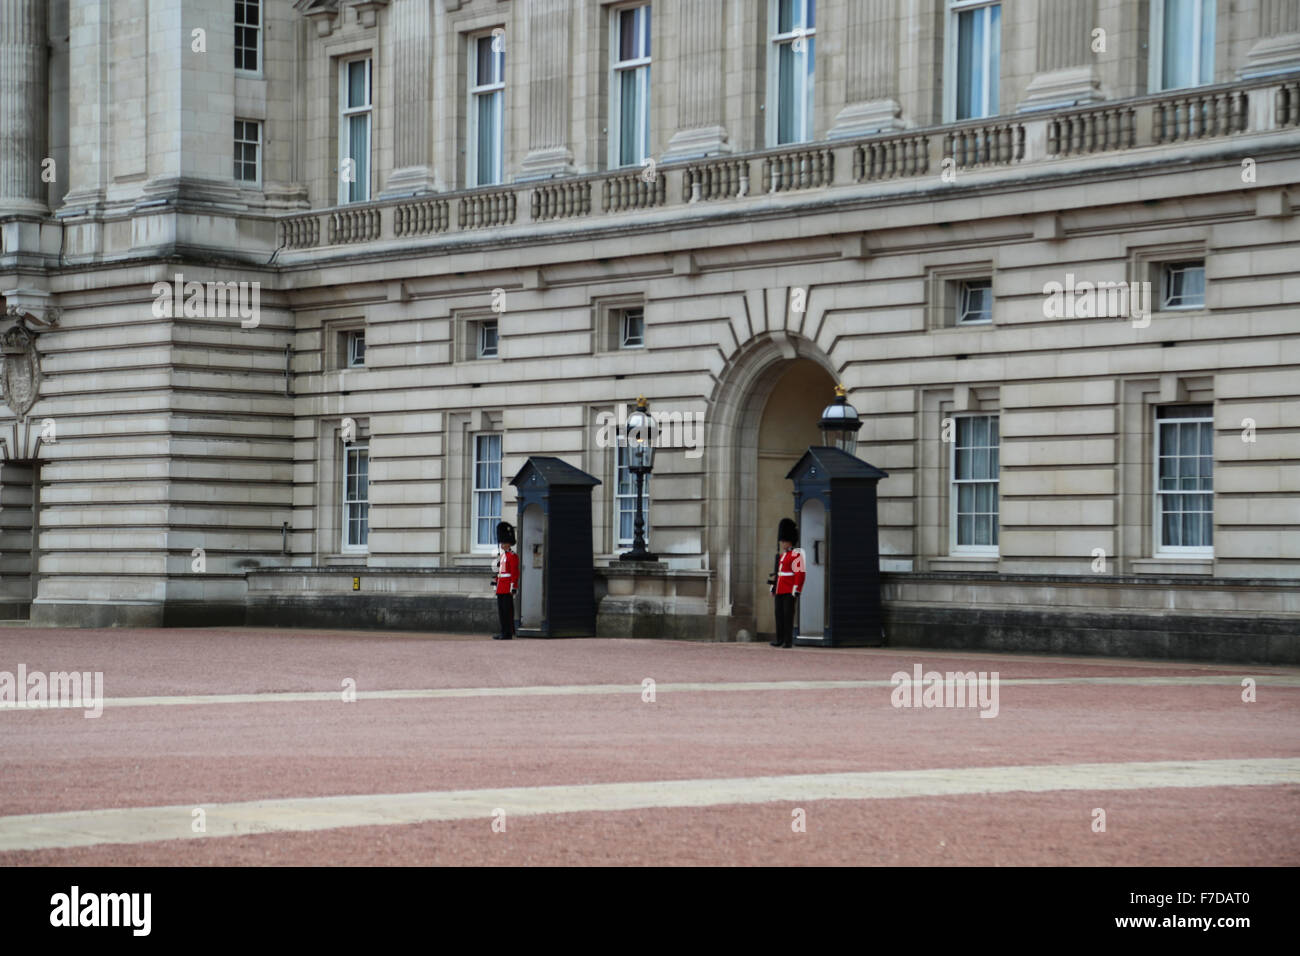 La Garde royale debout devant le palais de Buckingham juste avant la relève de la garde. Banque D'Images